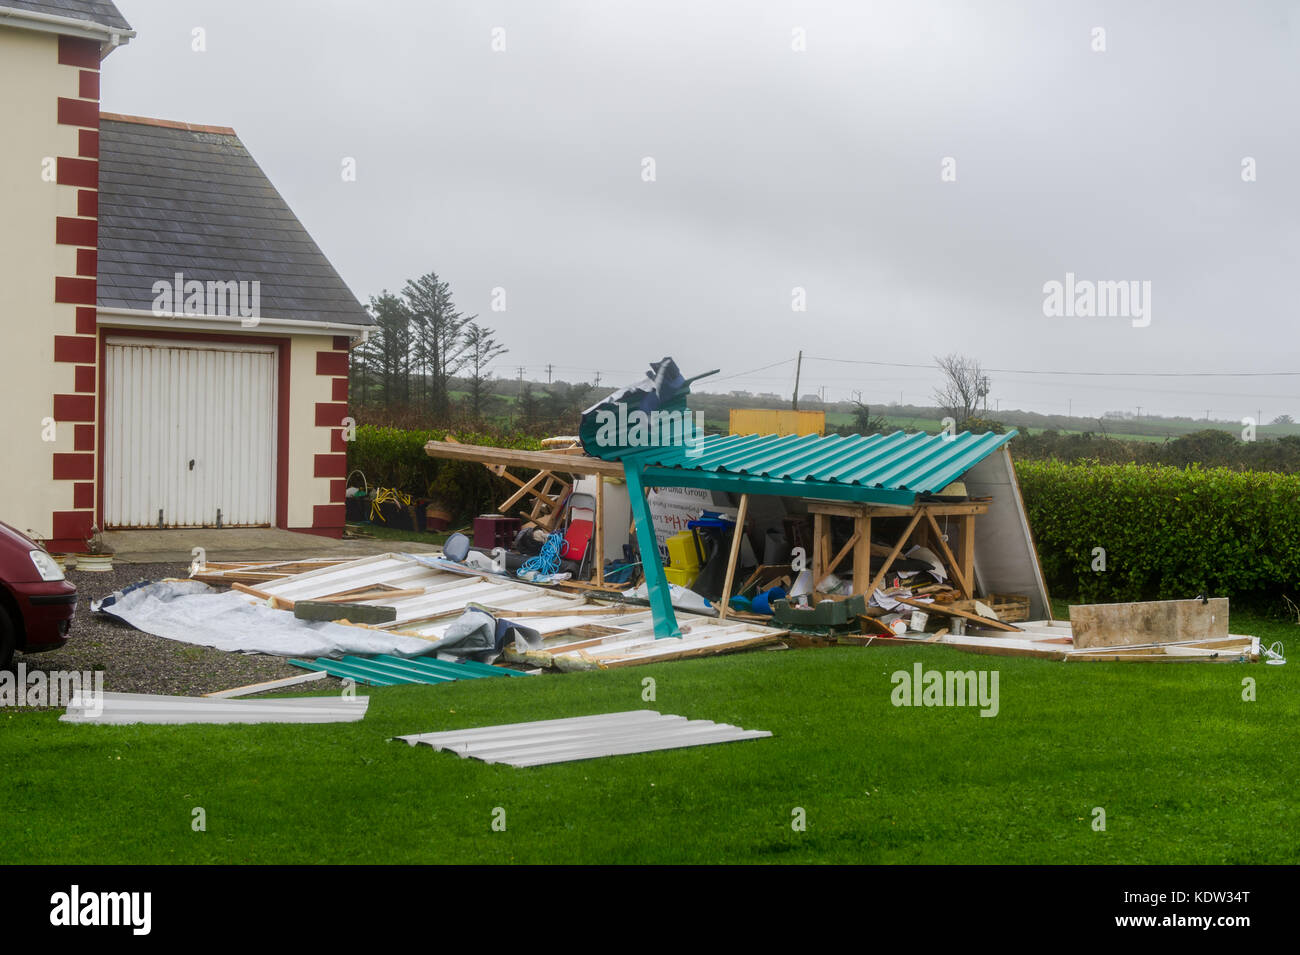 Schull, Irlande 16 Oct, 2017. Ex-Hurricane Ophelia a causé des dégâts structurels quand elle a frappé l'Irlande lundi. Ce hangar est démoli près de Schull. Credit : Andy Gibson/Alamy Live News. Banque D'Images